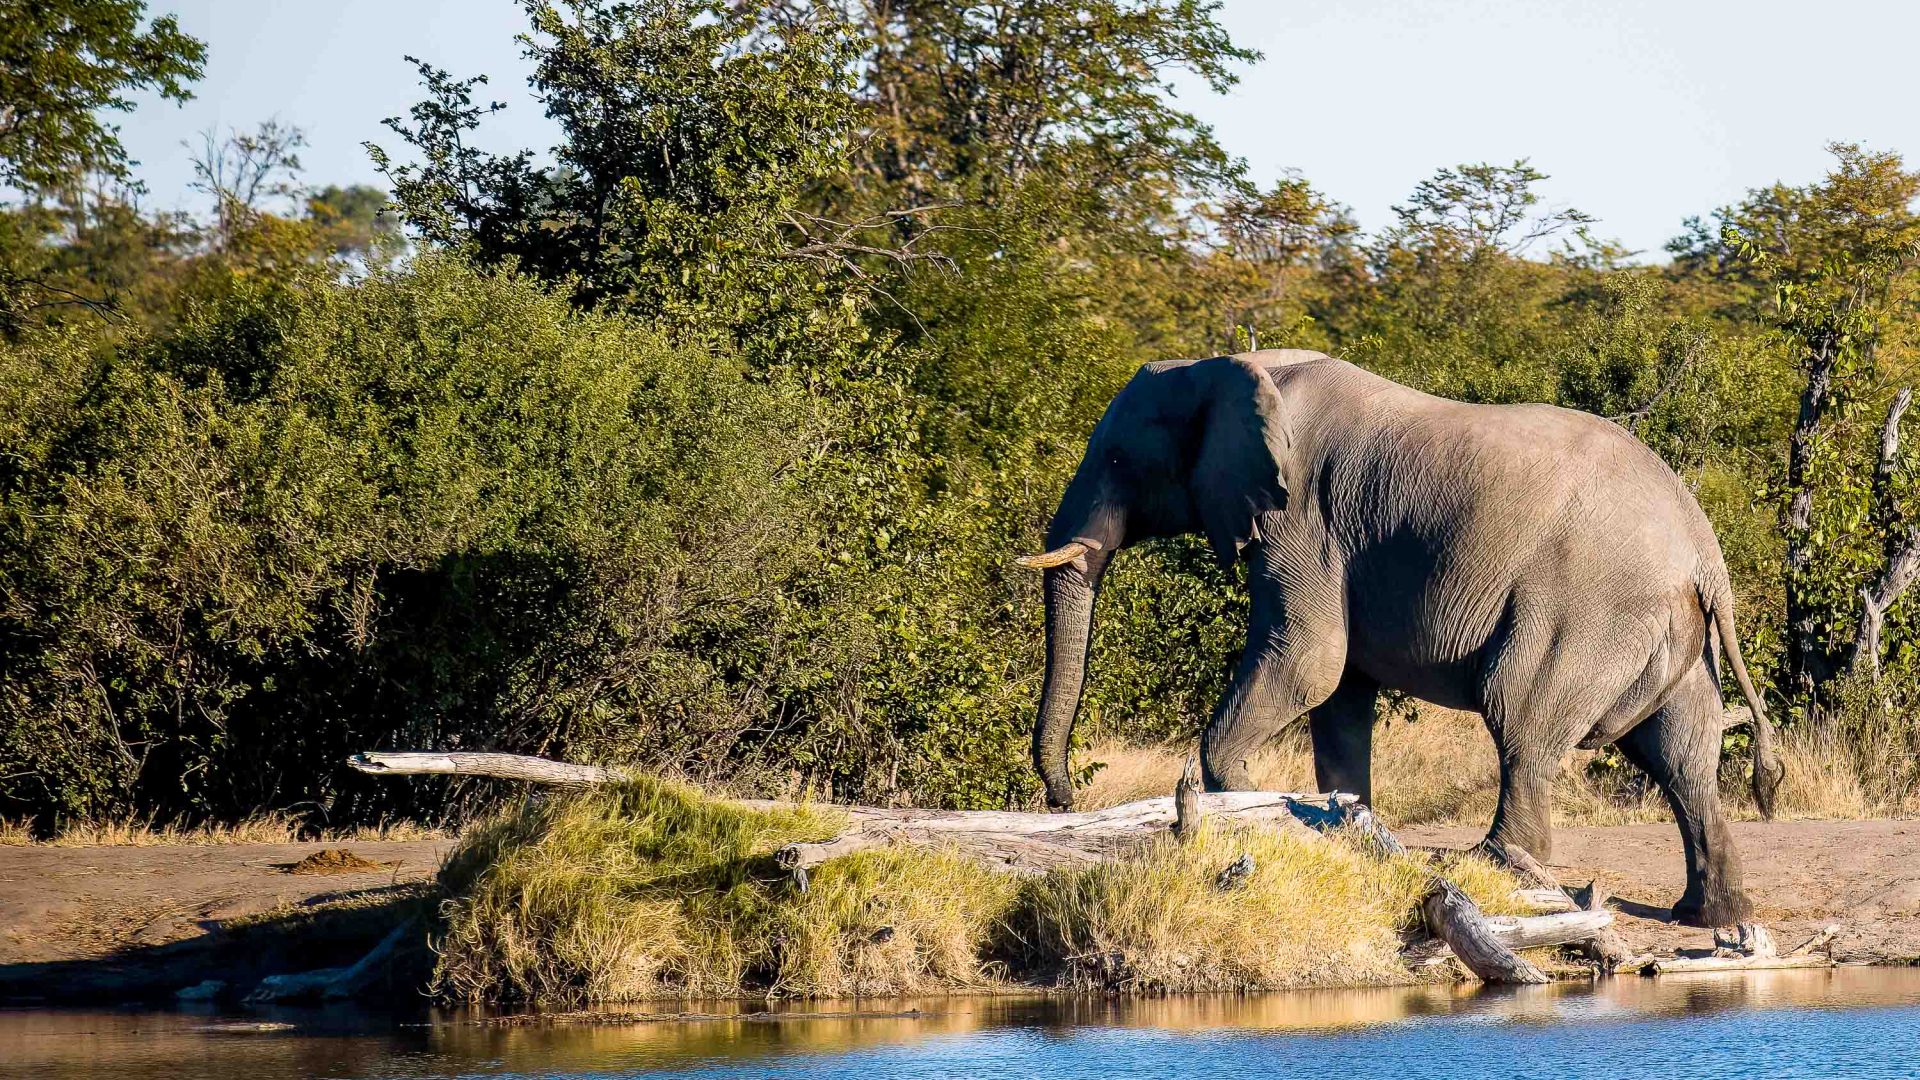 An elephant climbs an embankment.